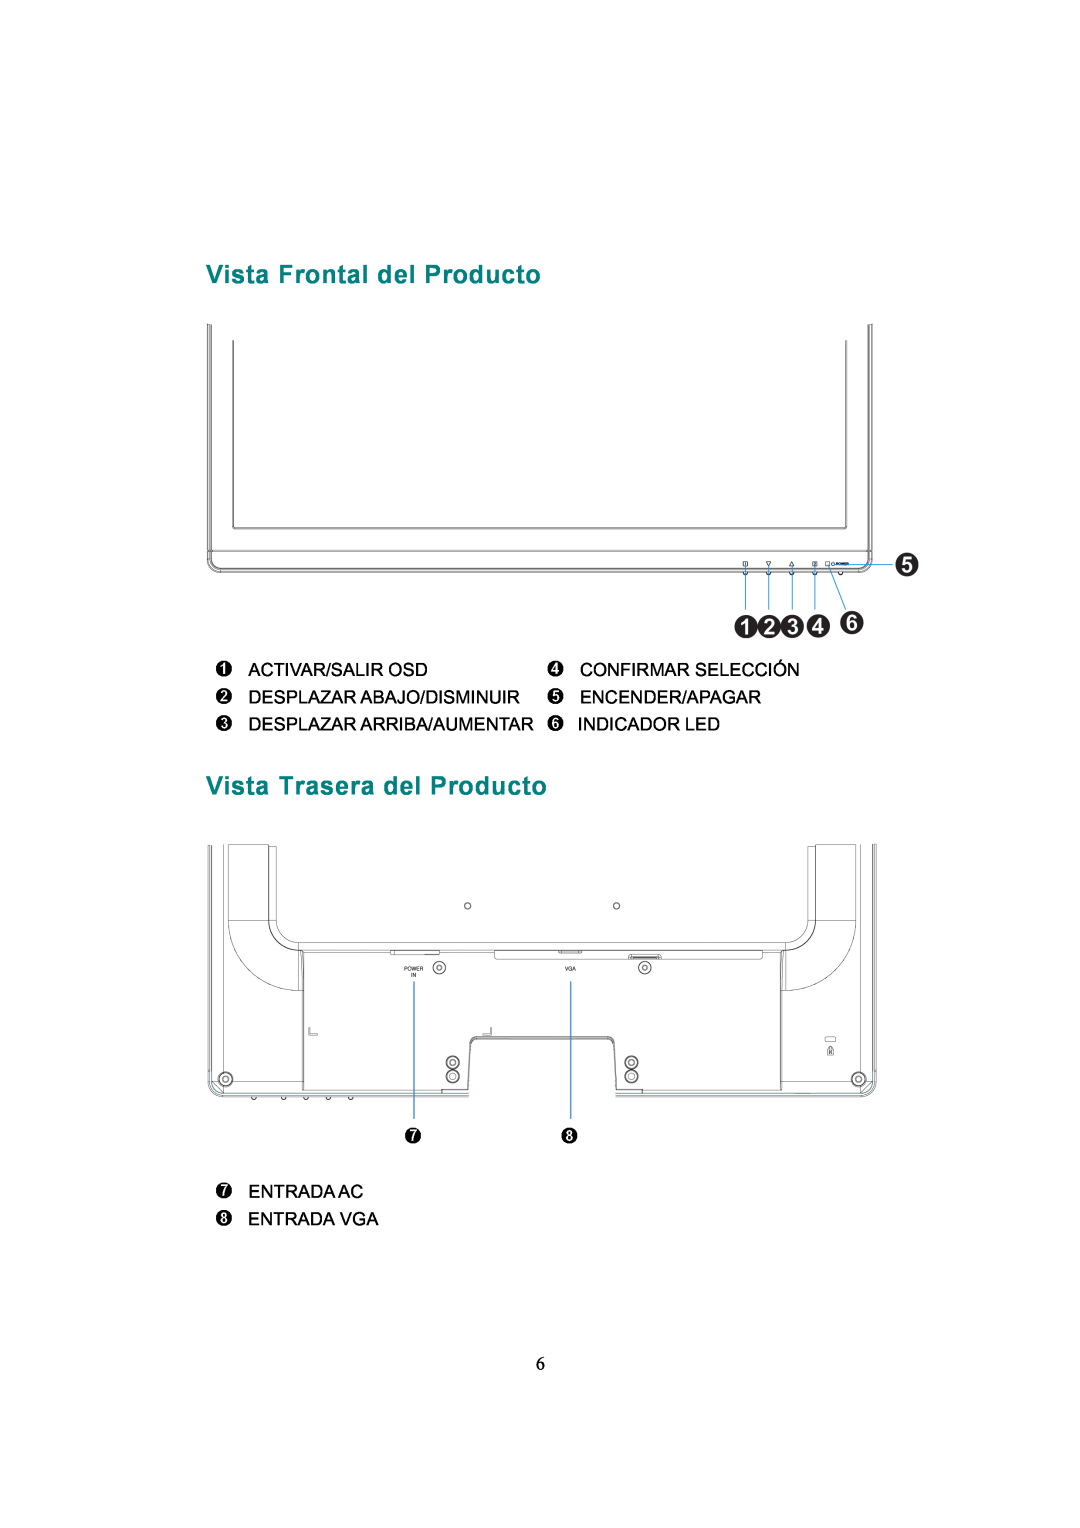 AOC 919Sw-1 manual Vista Frontal del Producto, Vista Trasera del Producto, Activar/Salir Osd, Confirmar Selección 